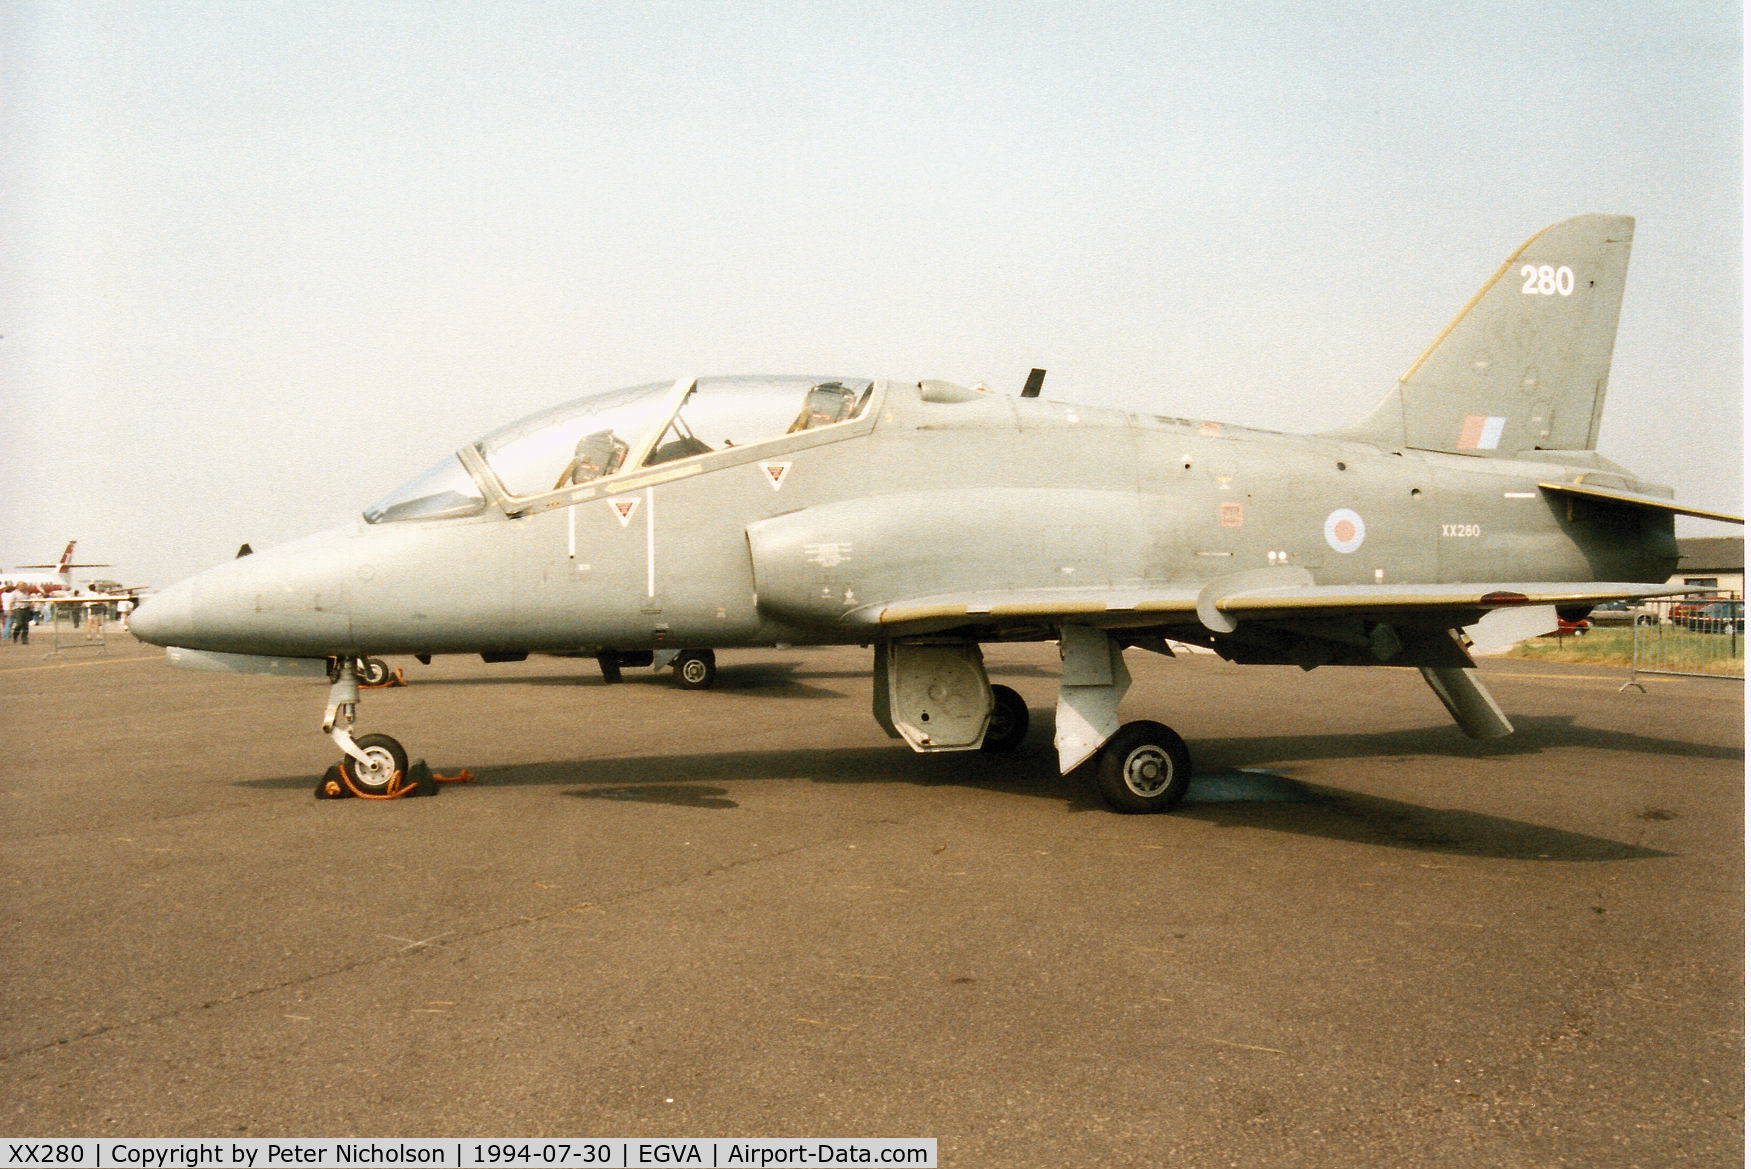 XX280, 1979 Hawker Siddeley Hawk T.1A C/N 105/312105, Hawk T.1A, callsign Skylark 2, of 6 Flying Training School on display at the 1994 Intnl Air Tattoo at RAF Fairford.